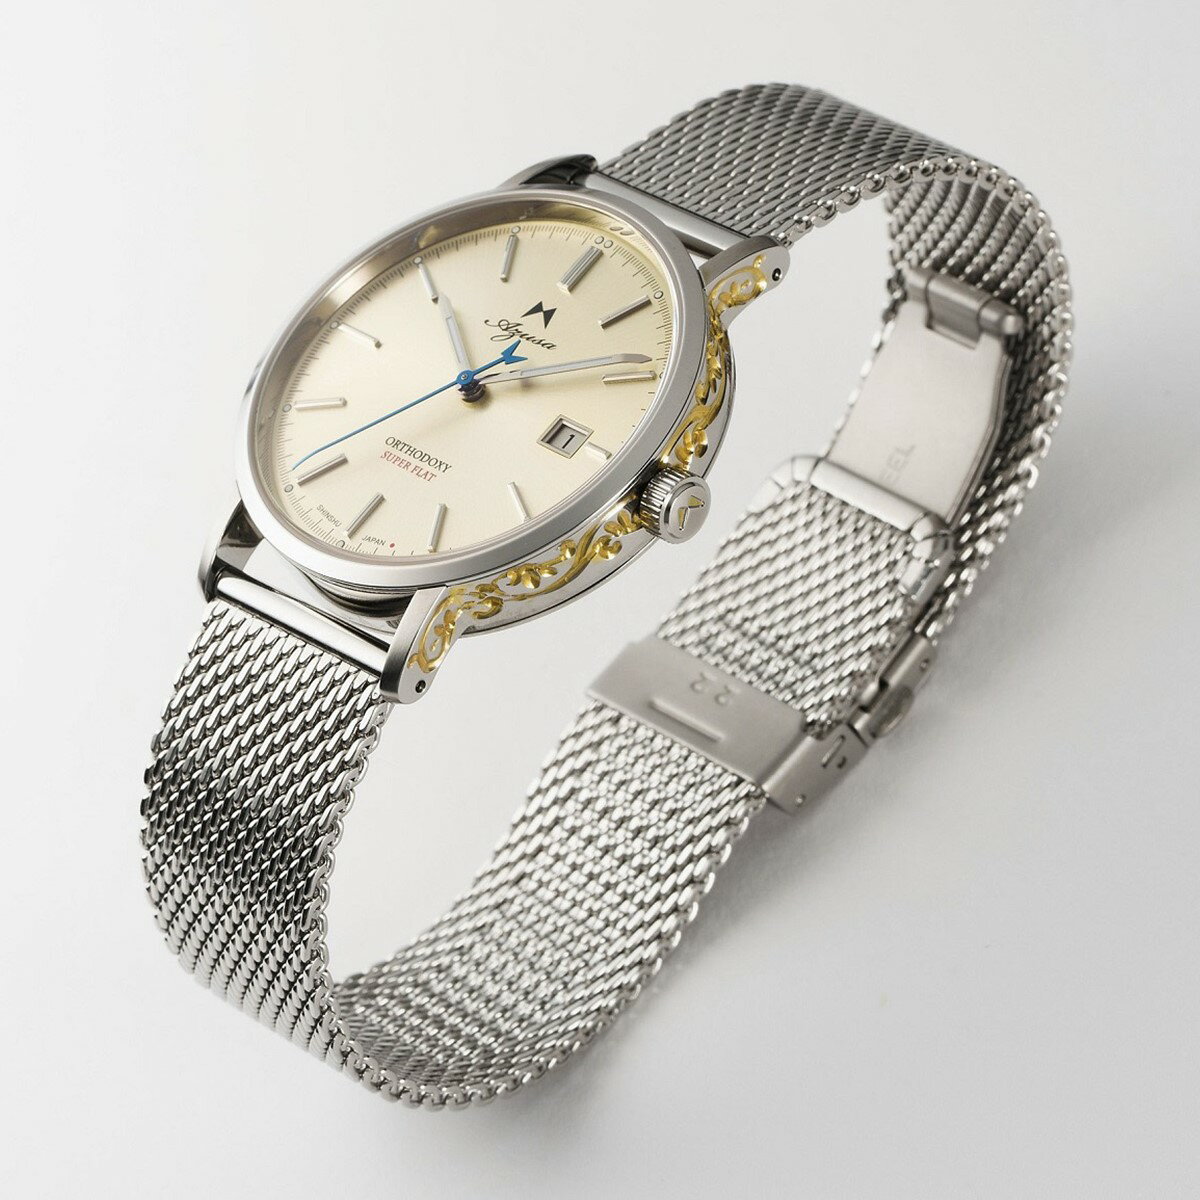 腕時計 Azusa ORTHODOXY アズサ オーソドキシー 彫刻モデル ゴールド メカニカル 自動巻 日本製 オリジナル腕時計 メンズ【送料無料】